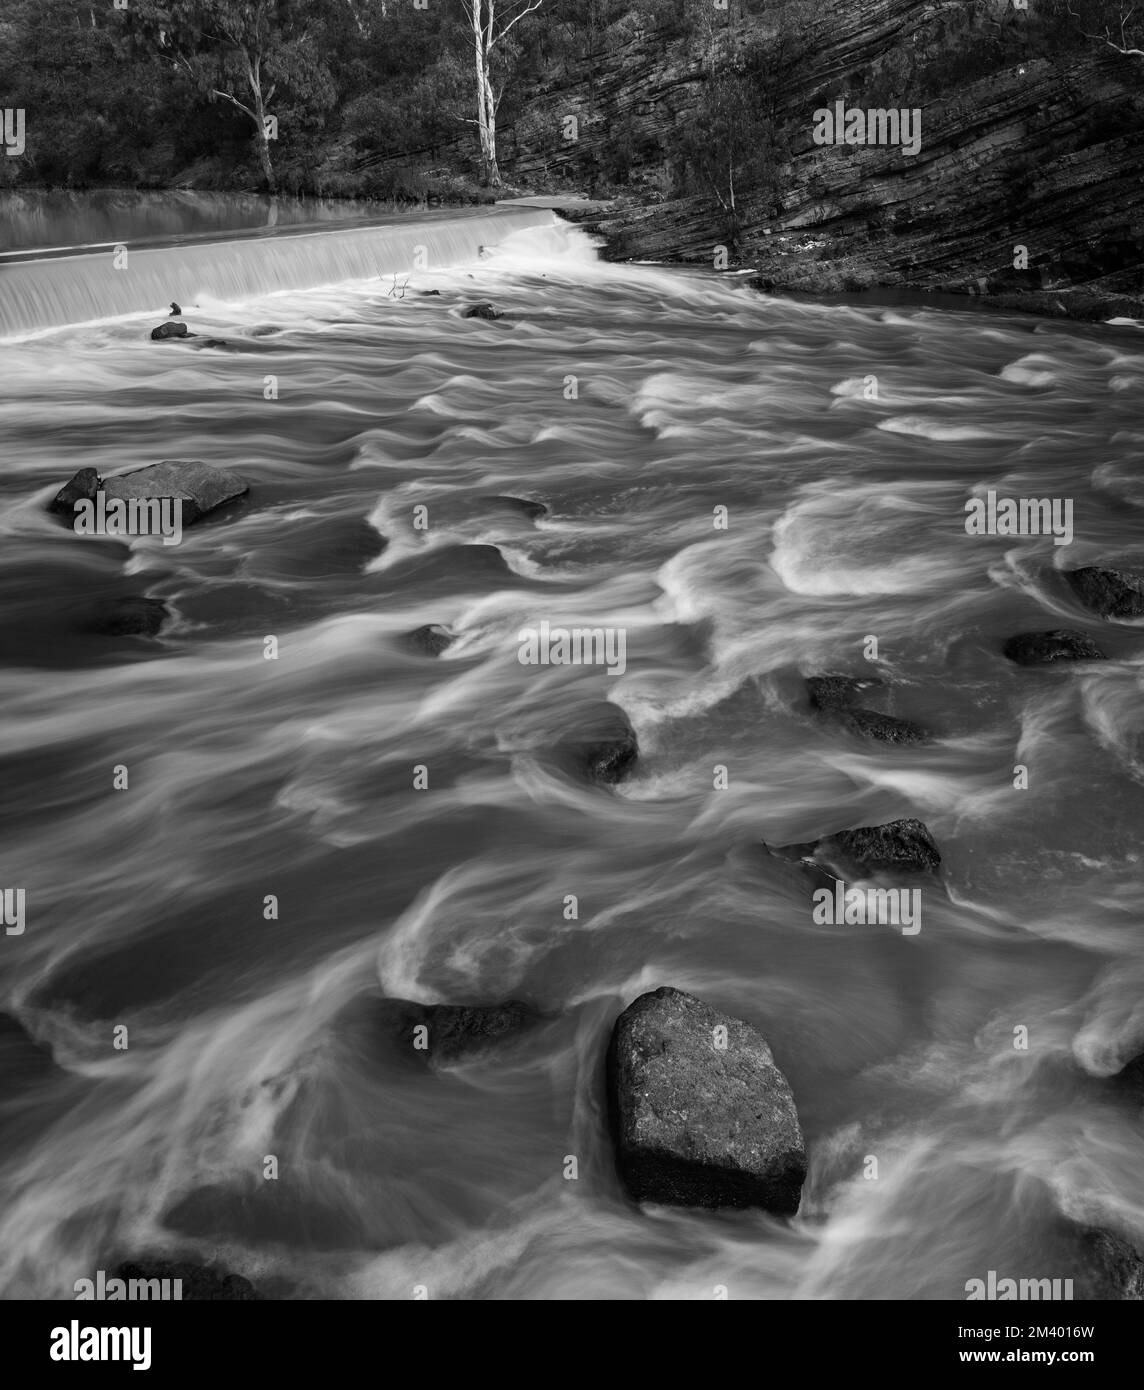 Photo verticale en niveaux de gris des petites vagues du fleuve Yarra, en Australie Banque D'Images